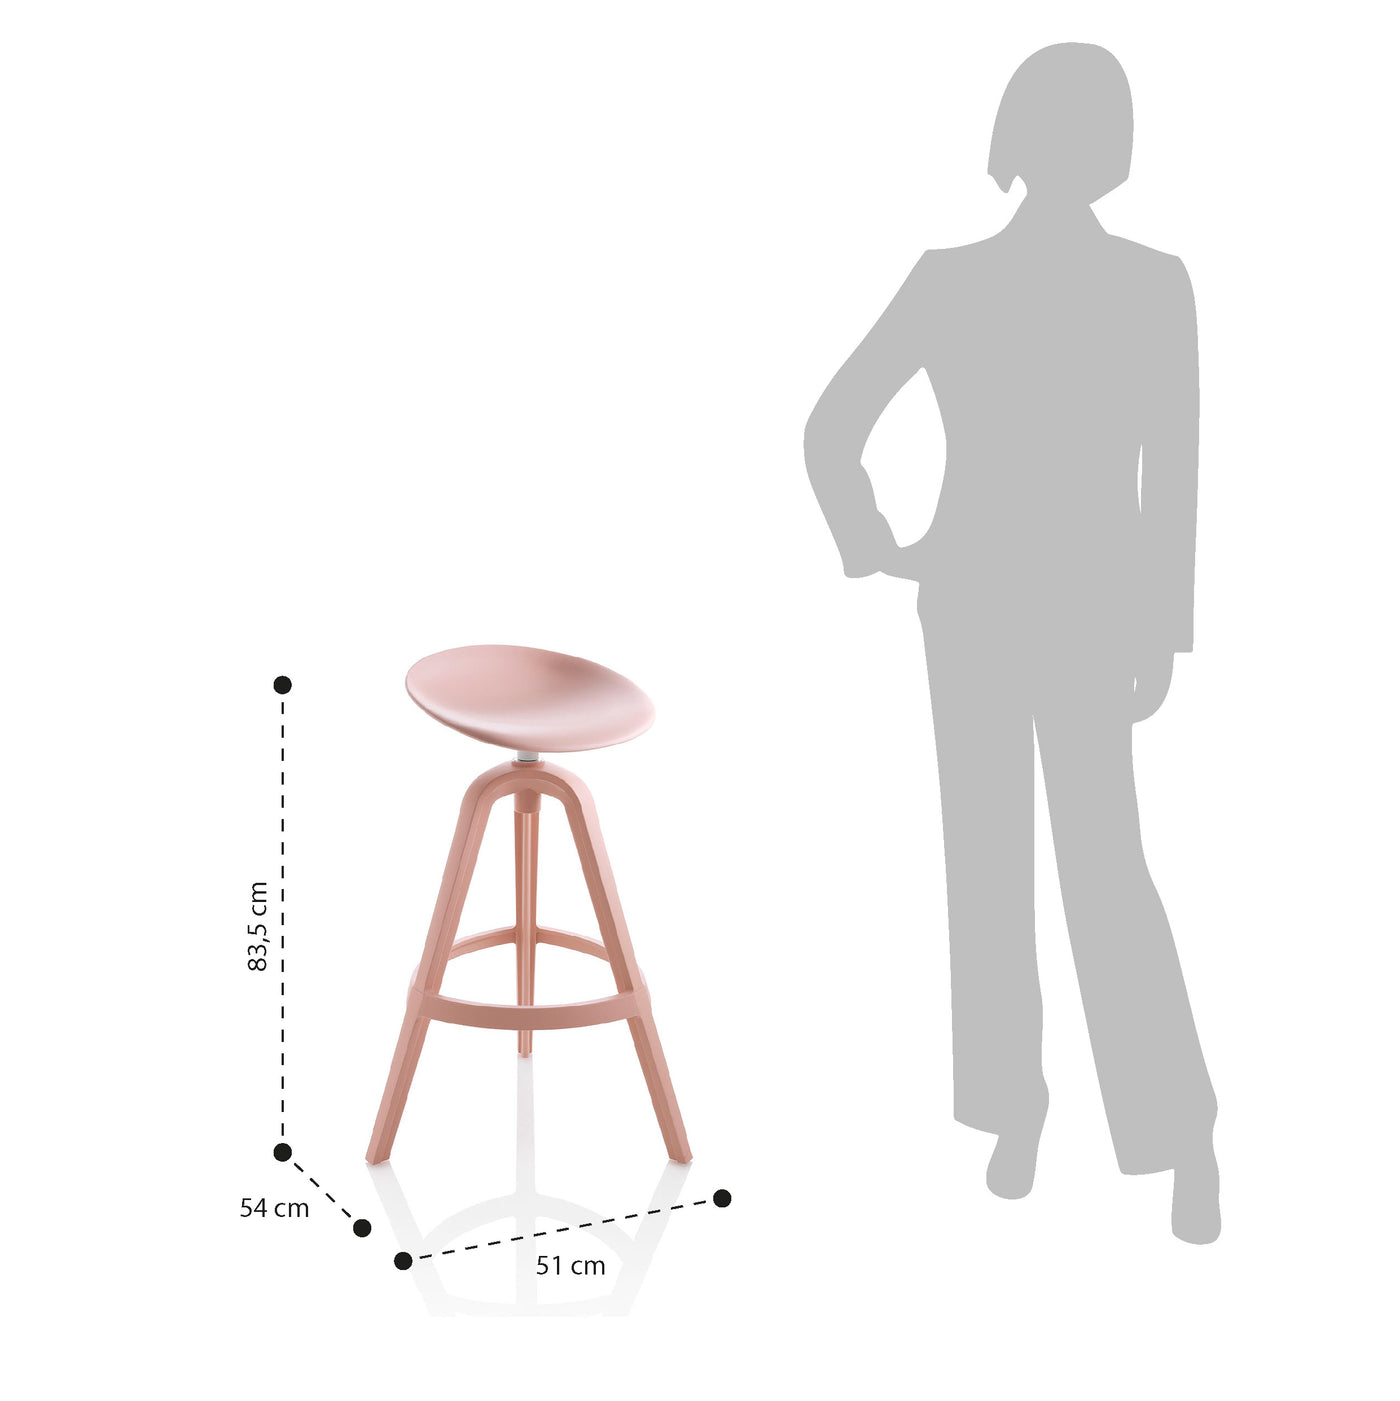 Set of 2 BONNY pink indoor/outdoor stools